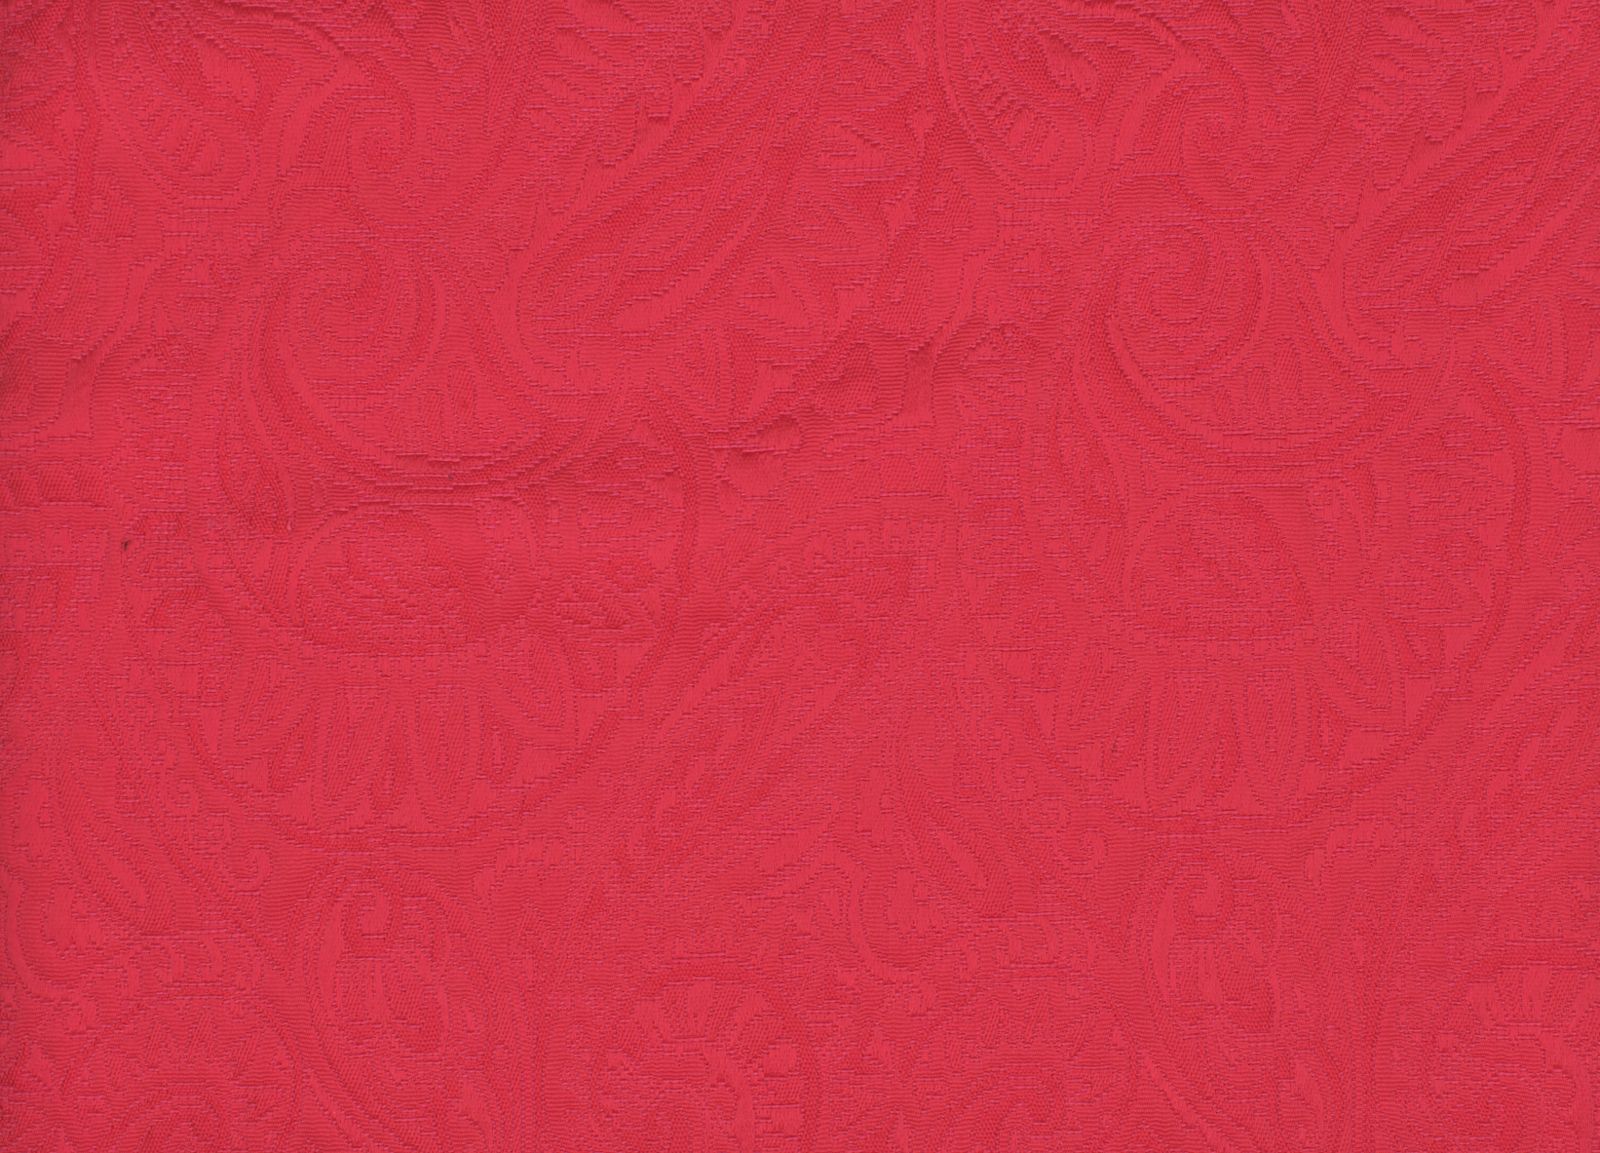 33001-02 Deep Pink Woven Jacqaurd Plain Dyed Blend 296g/yd 54" blend cotton jacqaurd pink plain dyed polyester woven Solid Color, Jacquard - knit fabric - woven fabric - fabric company - fabric wholesale - fabric b2b - fabric factory - high quality fabric - hong kong fabric - fabric hk - acetate fabric - cotton fabric - linen fabric - metallic fabric - nylon fabric - polyester fabric - spandex fabric - chun wing hing - cwh hk - fabric worldwide ship - 針織布 - 梳織布 - 布料公司- 布料批發 - 香港布料 - 秦榮興